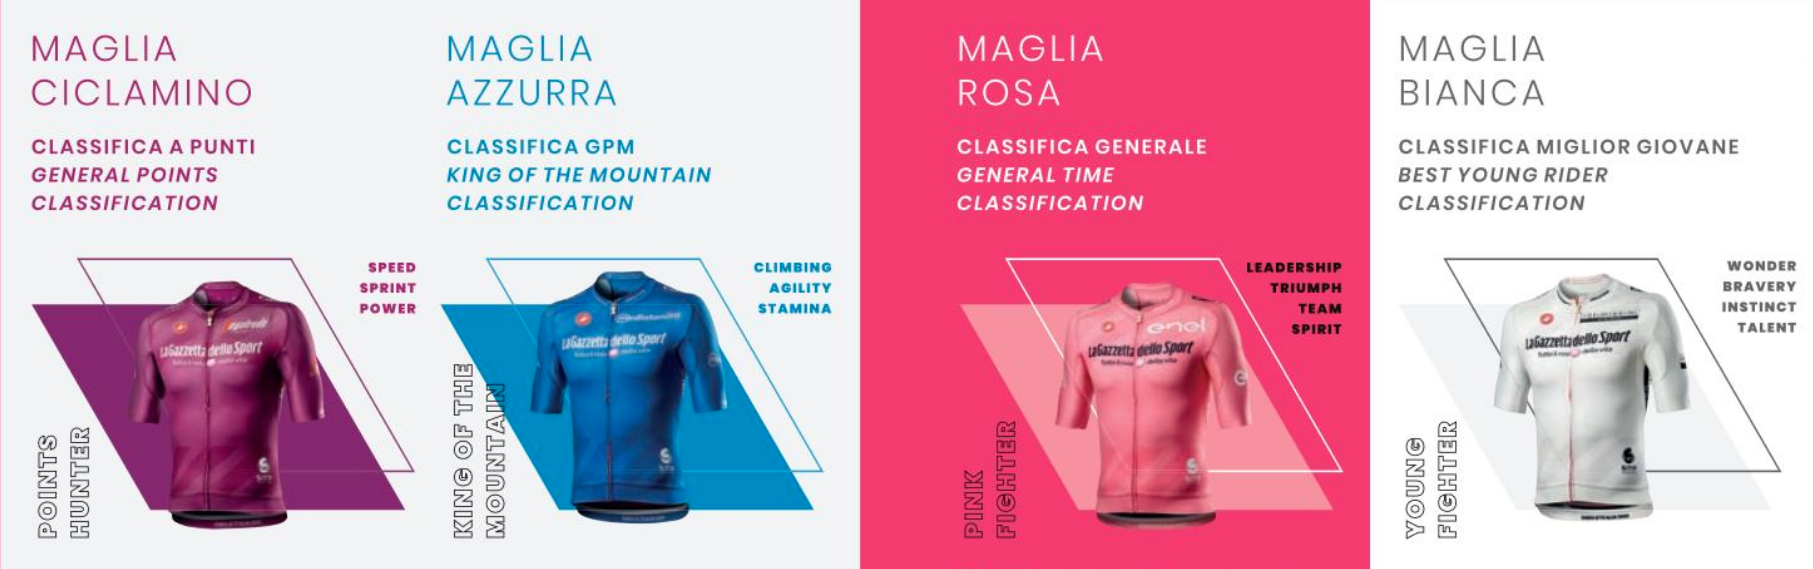 環義賽的四件車衣顏色設定，都有著深層的意涵。（圖片來源：Giro d’Italia Official Website）